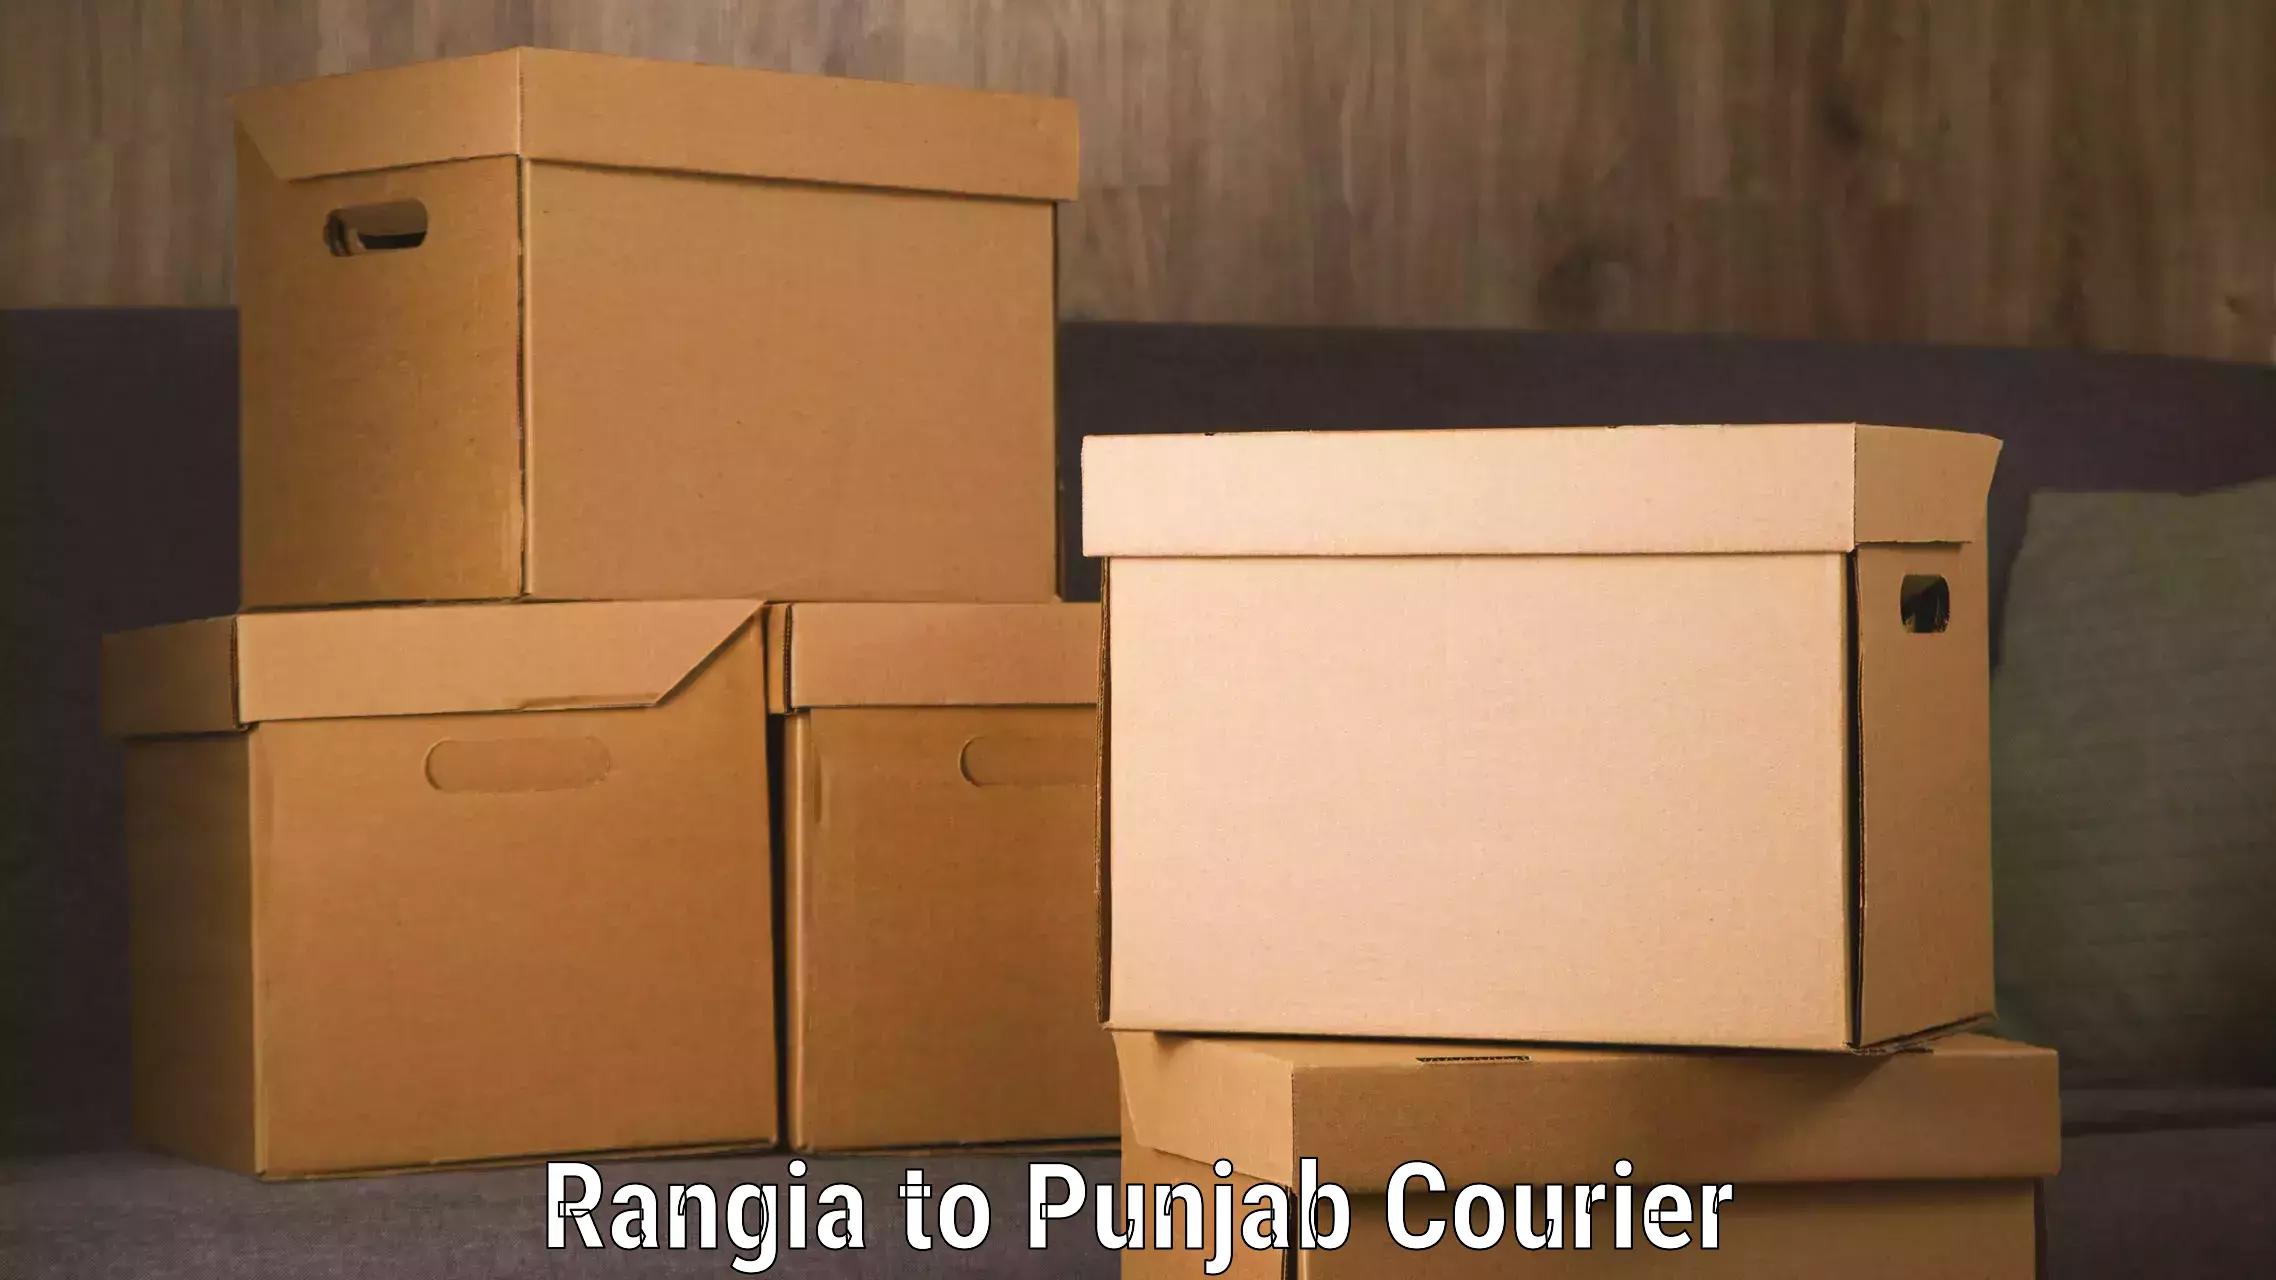 Baggage transport innovation Rangia to Punjab